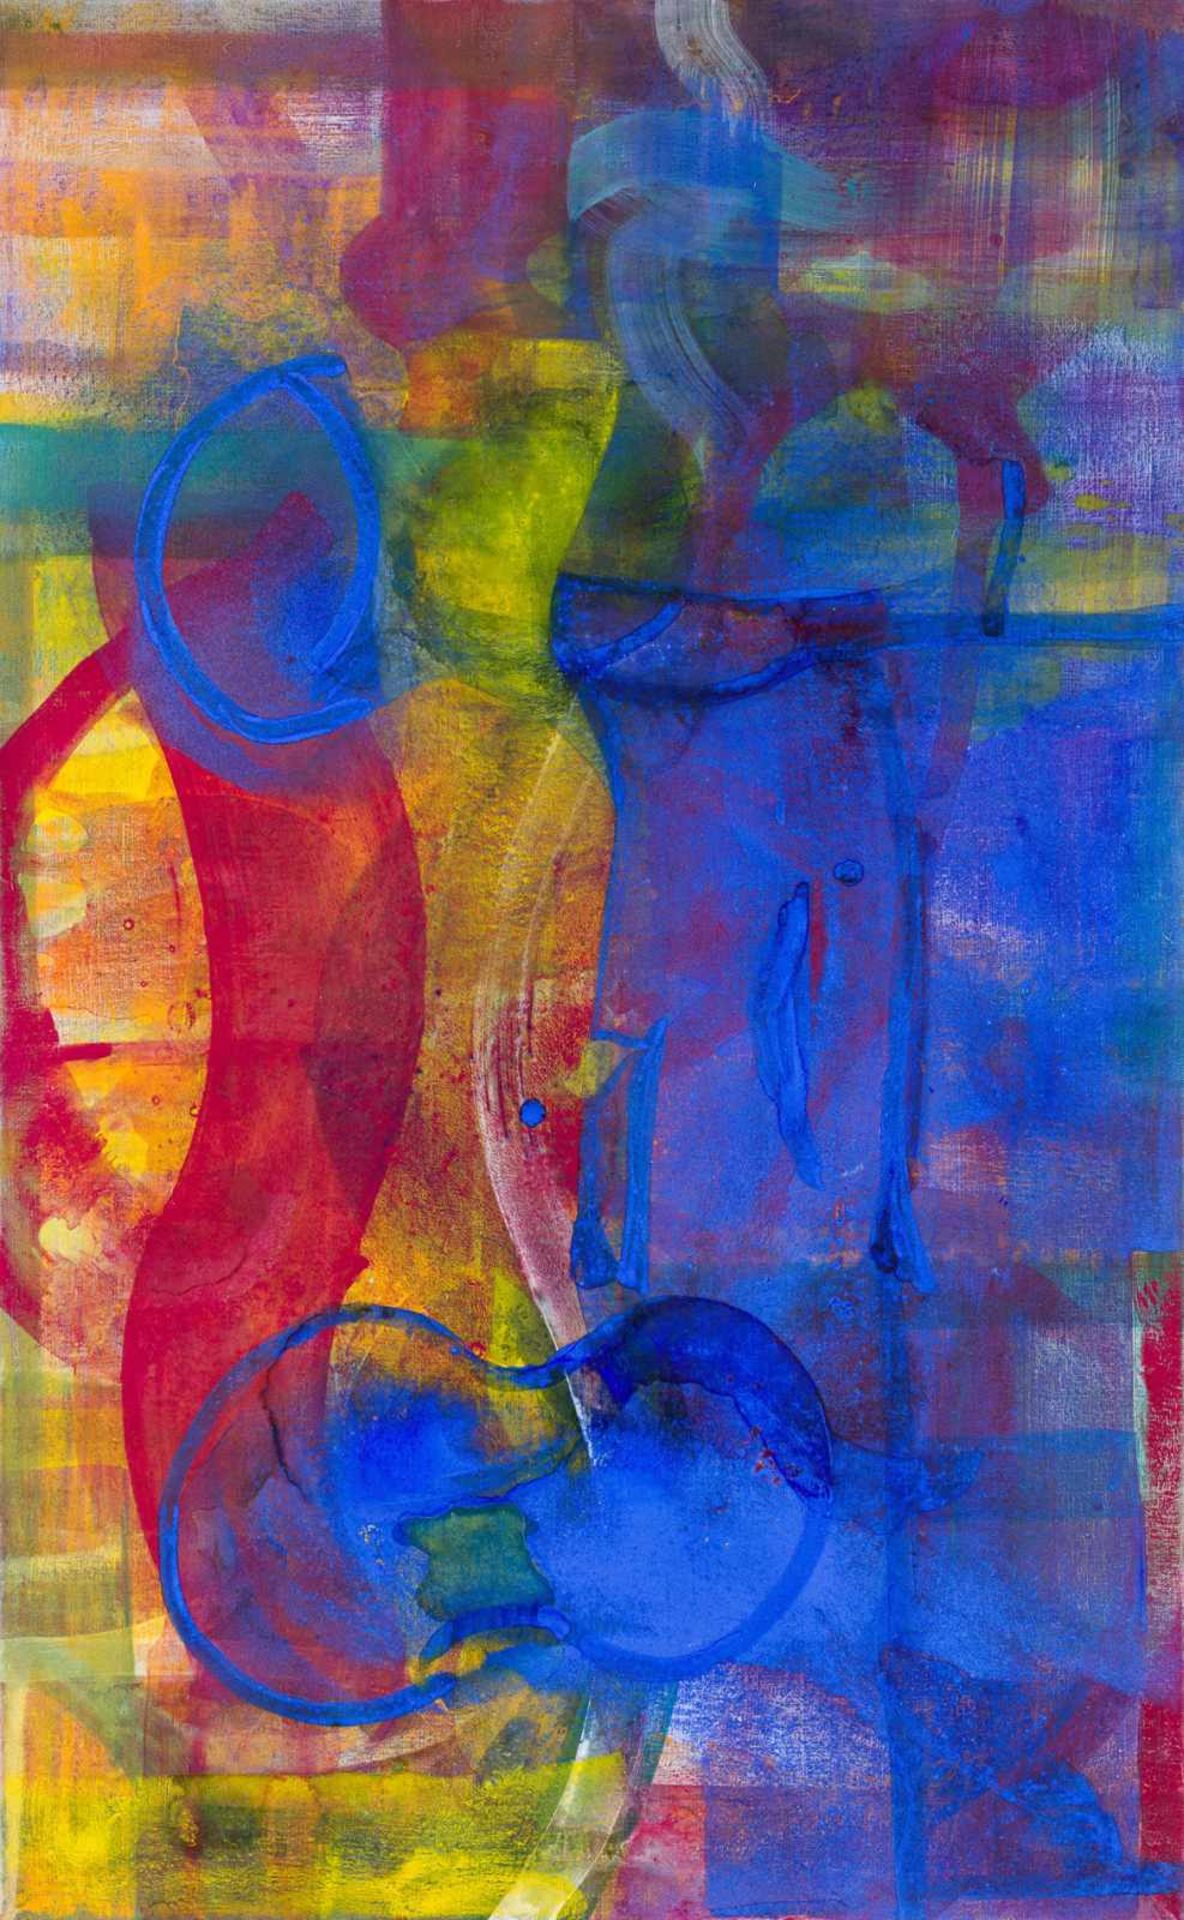 Katharina Prantl * Wien 1958 geb. Nocturne Öl auf Leinwand 130 x 80,5 cm 2016 rückseitig signiert,